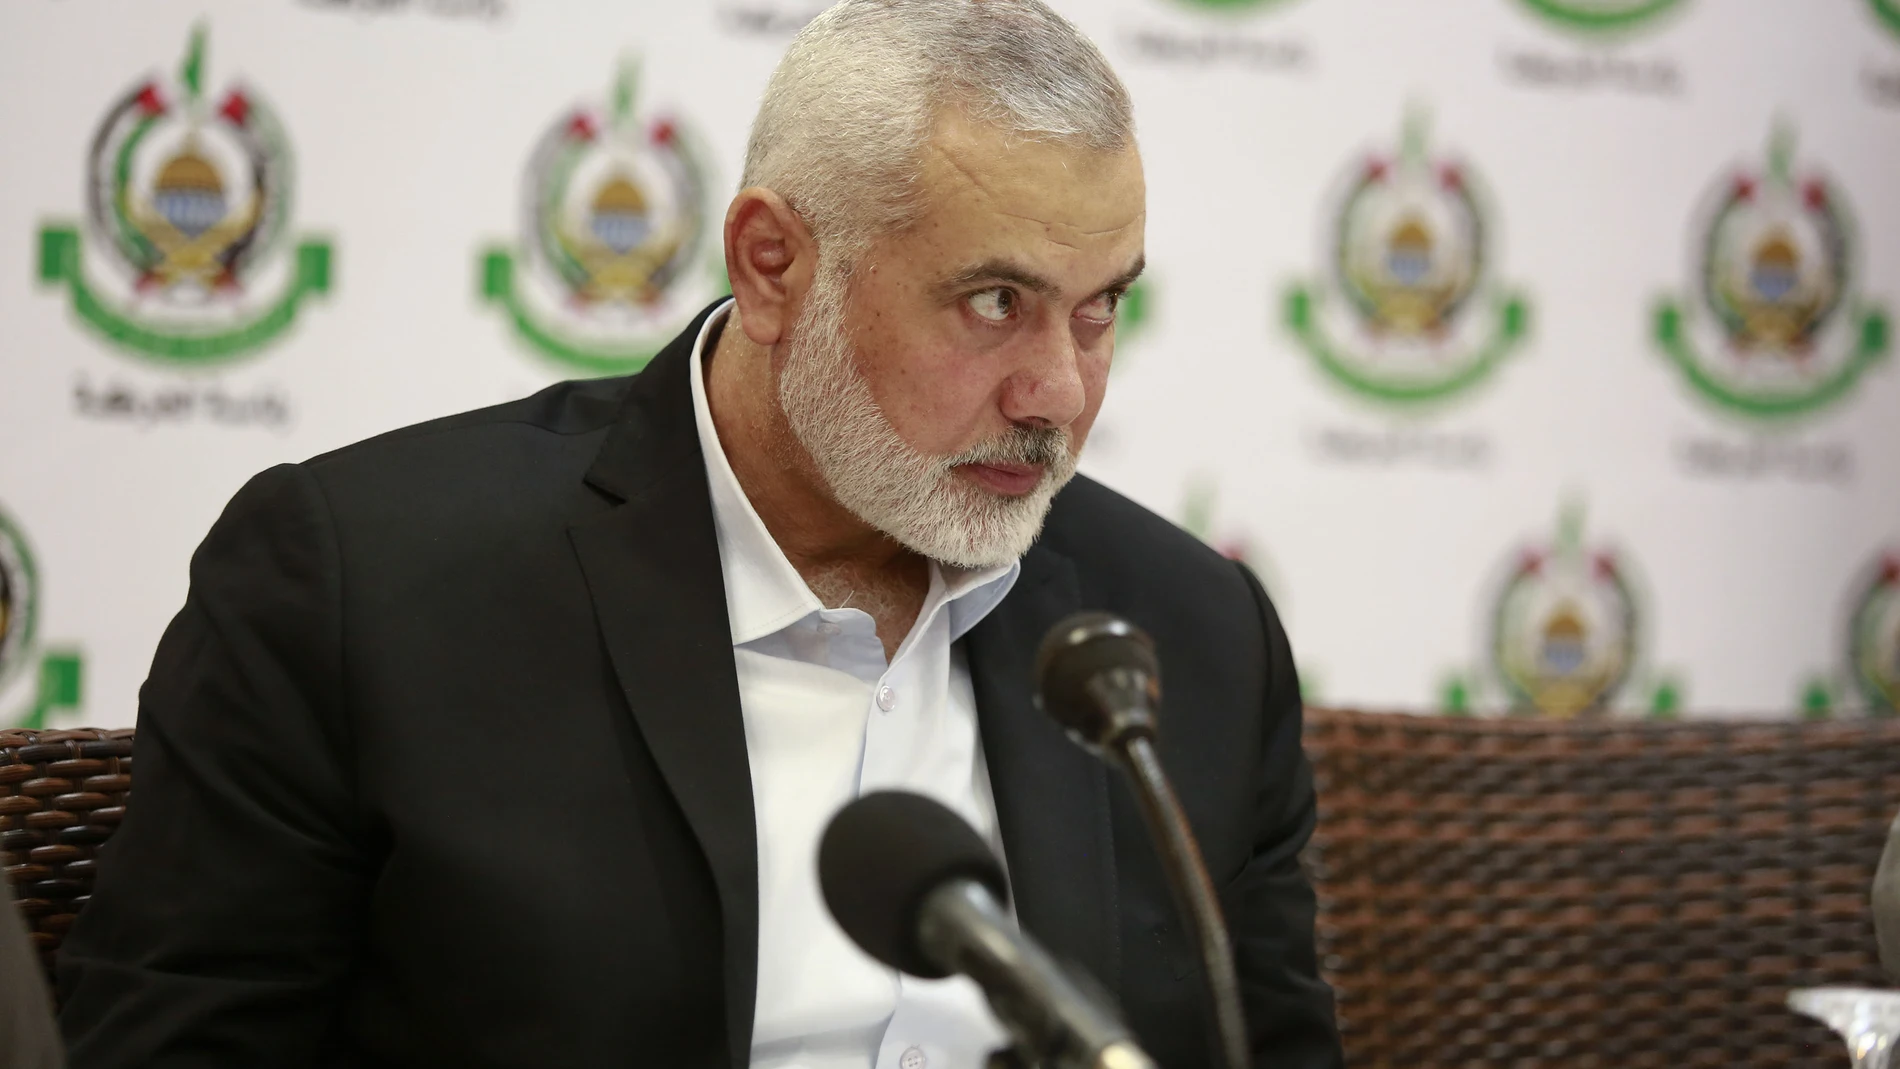 O.Próximo.- El líder de Hamás enmarca el ataque como una "batalla por la dignidad" frente a la ocupación en Cisjordania